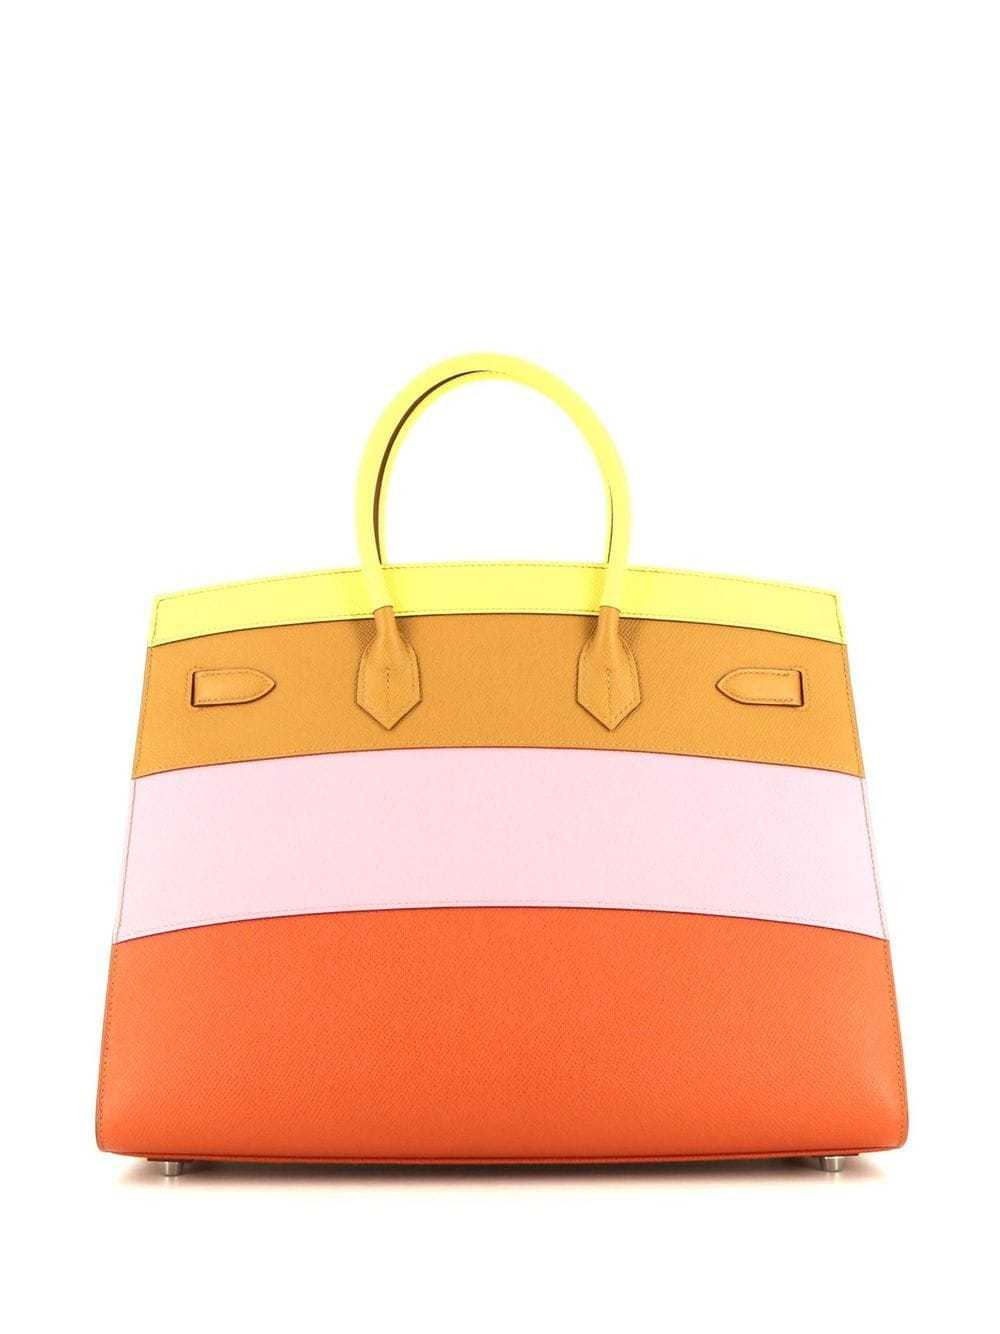 Hermès Pre-Owned pre-owned Birkin 30 handbag - Ye… - image 2